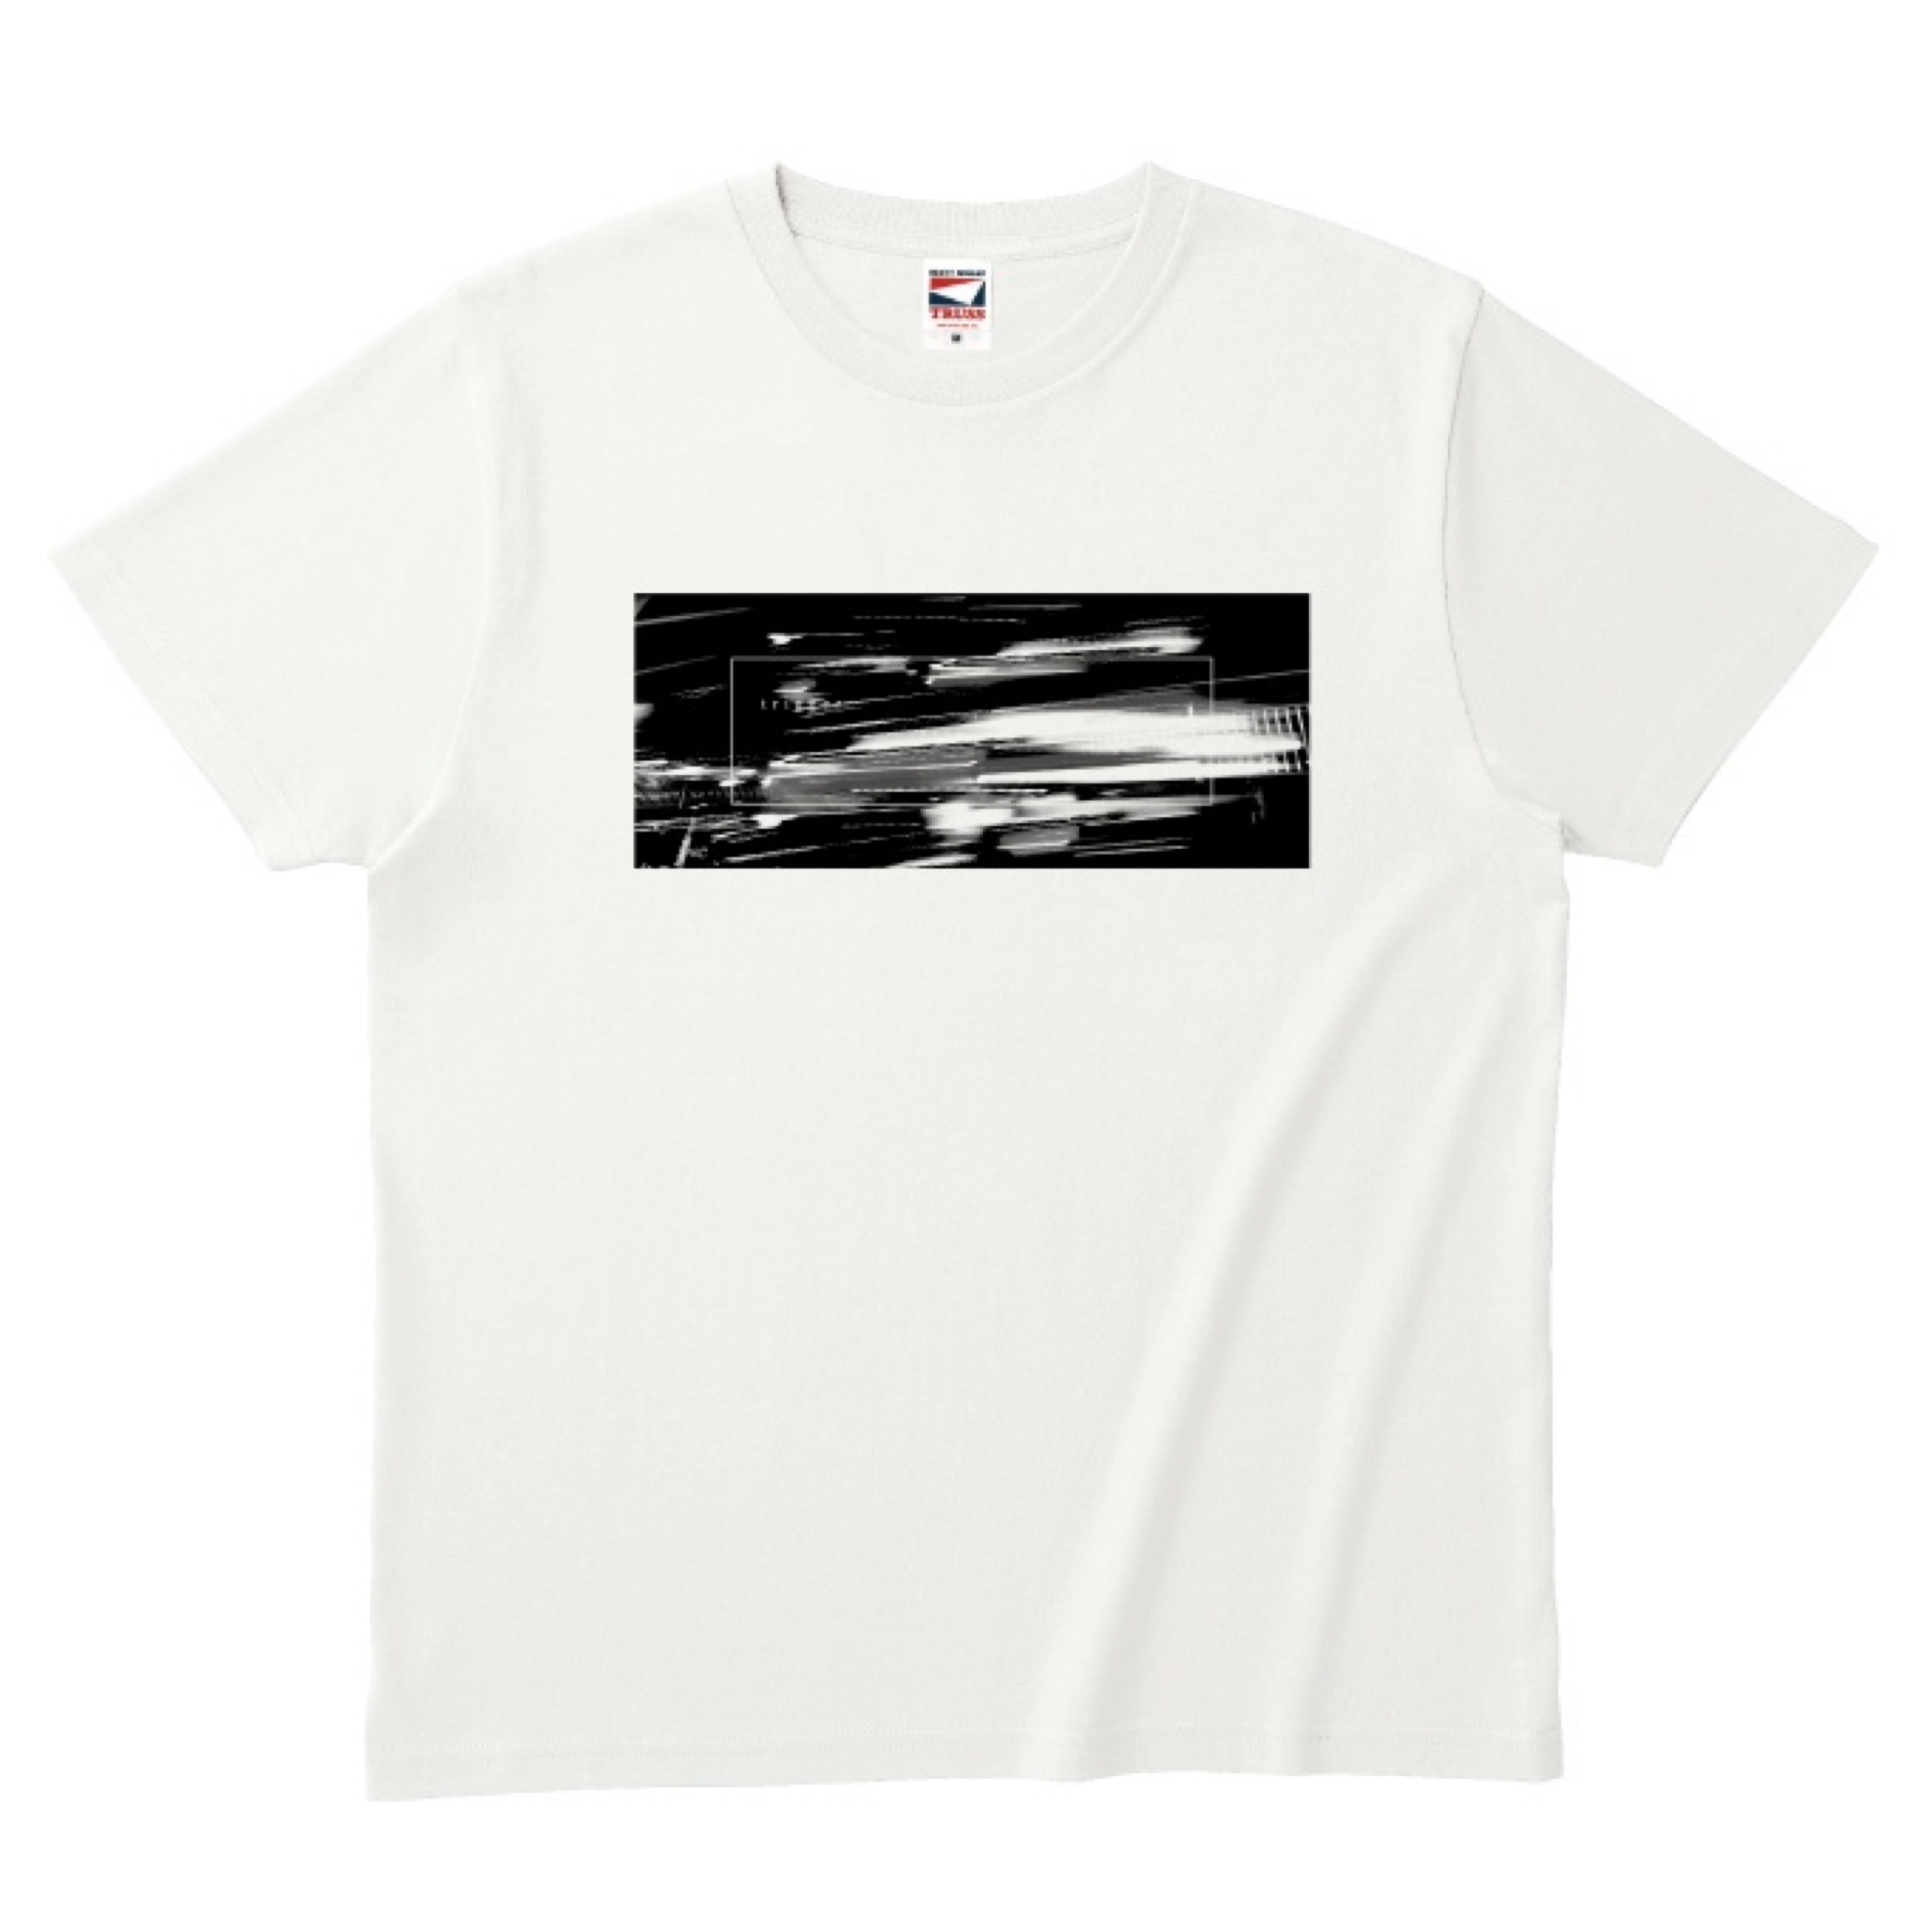 【秋月琢登 (感覚ピエロ) デザイン】Trigger Jacket T-shirt(ホワイト)